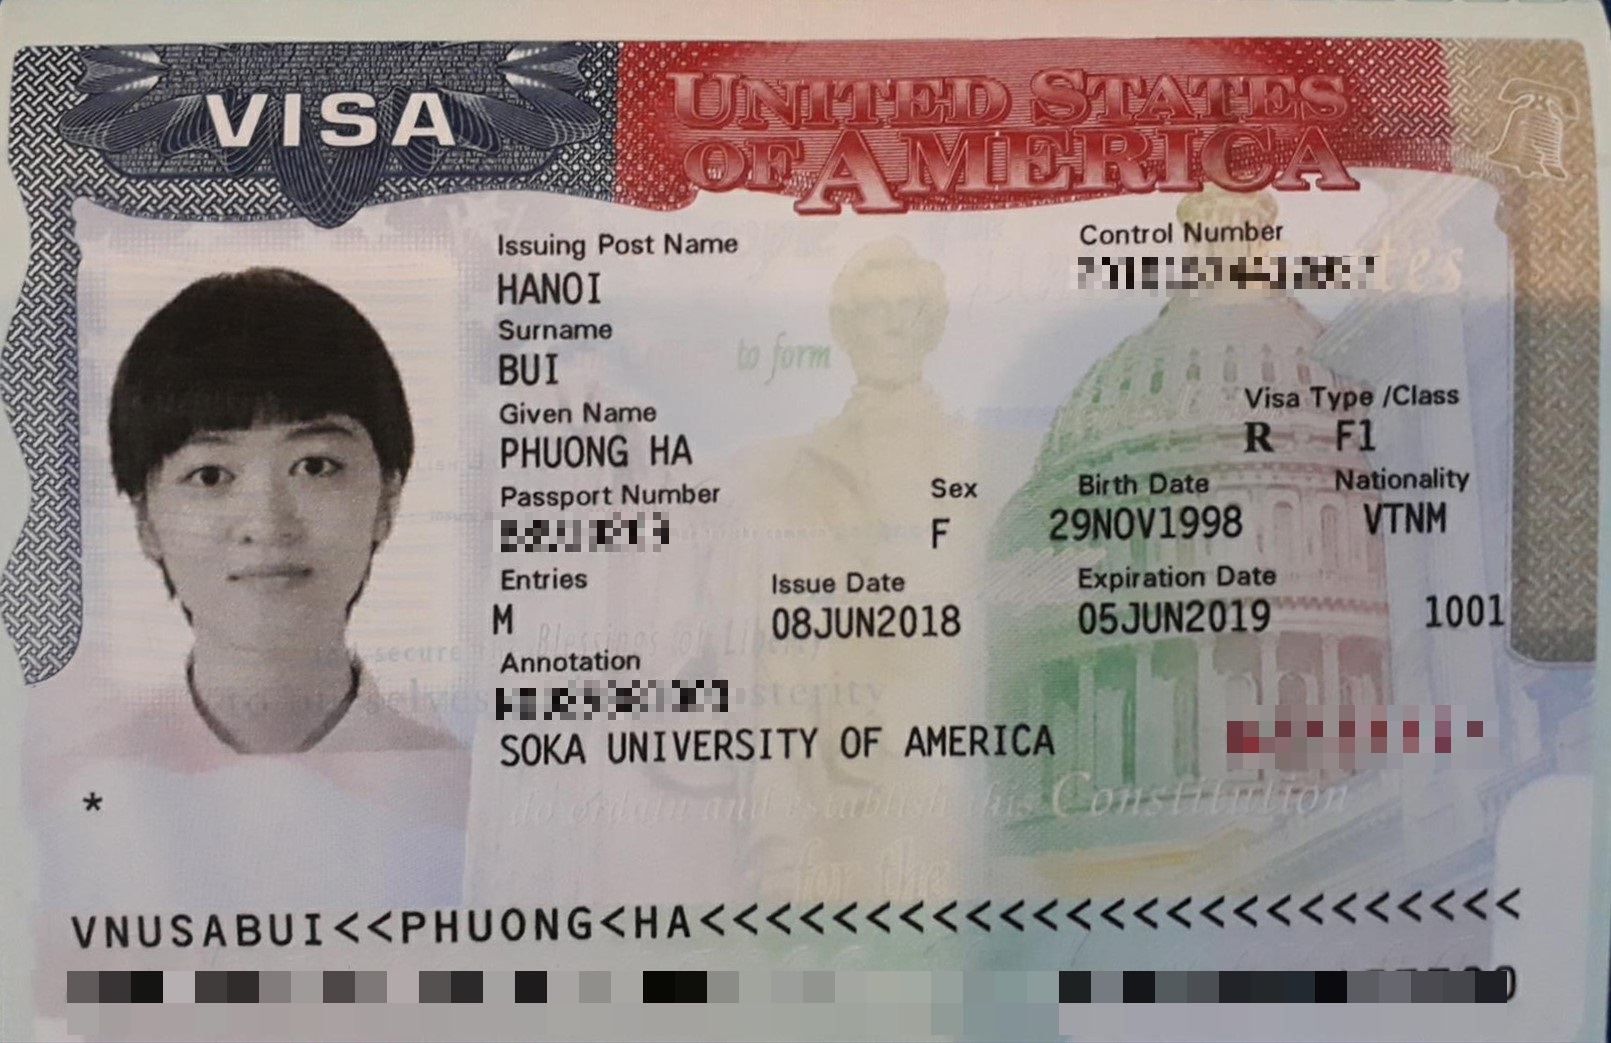 Chúc mừng bạn Bùi Phương Hà đã đậu visa du học Mỹ